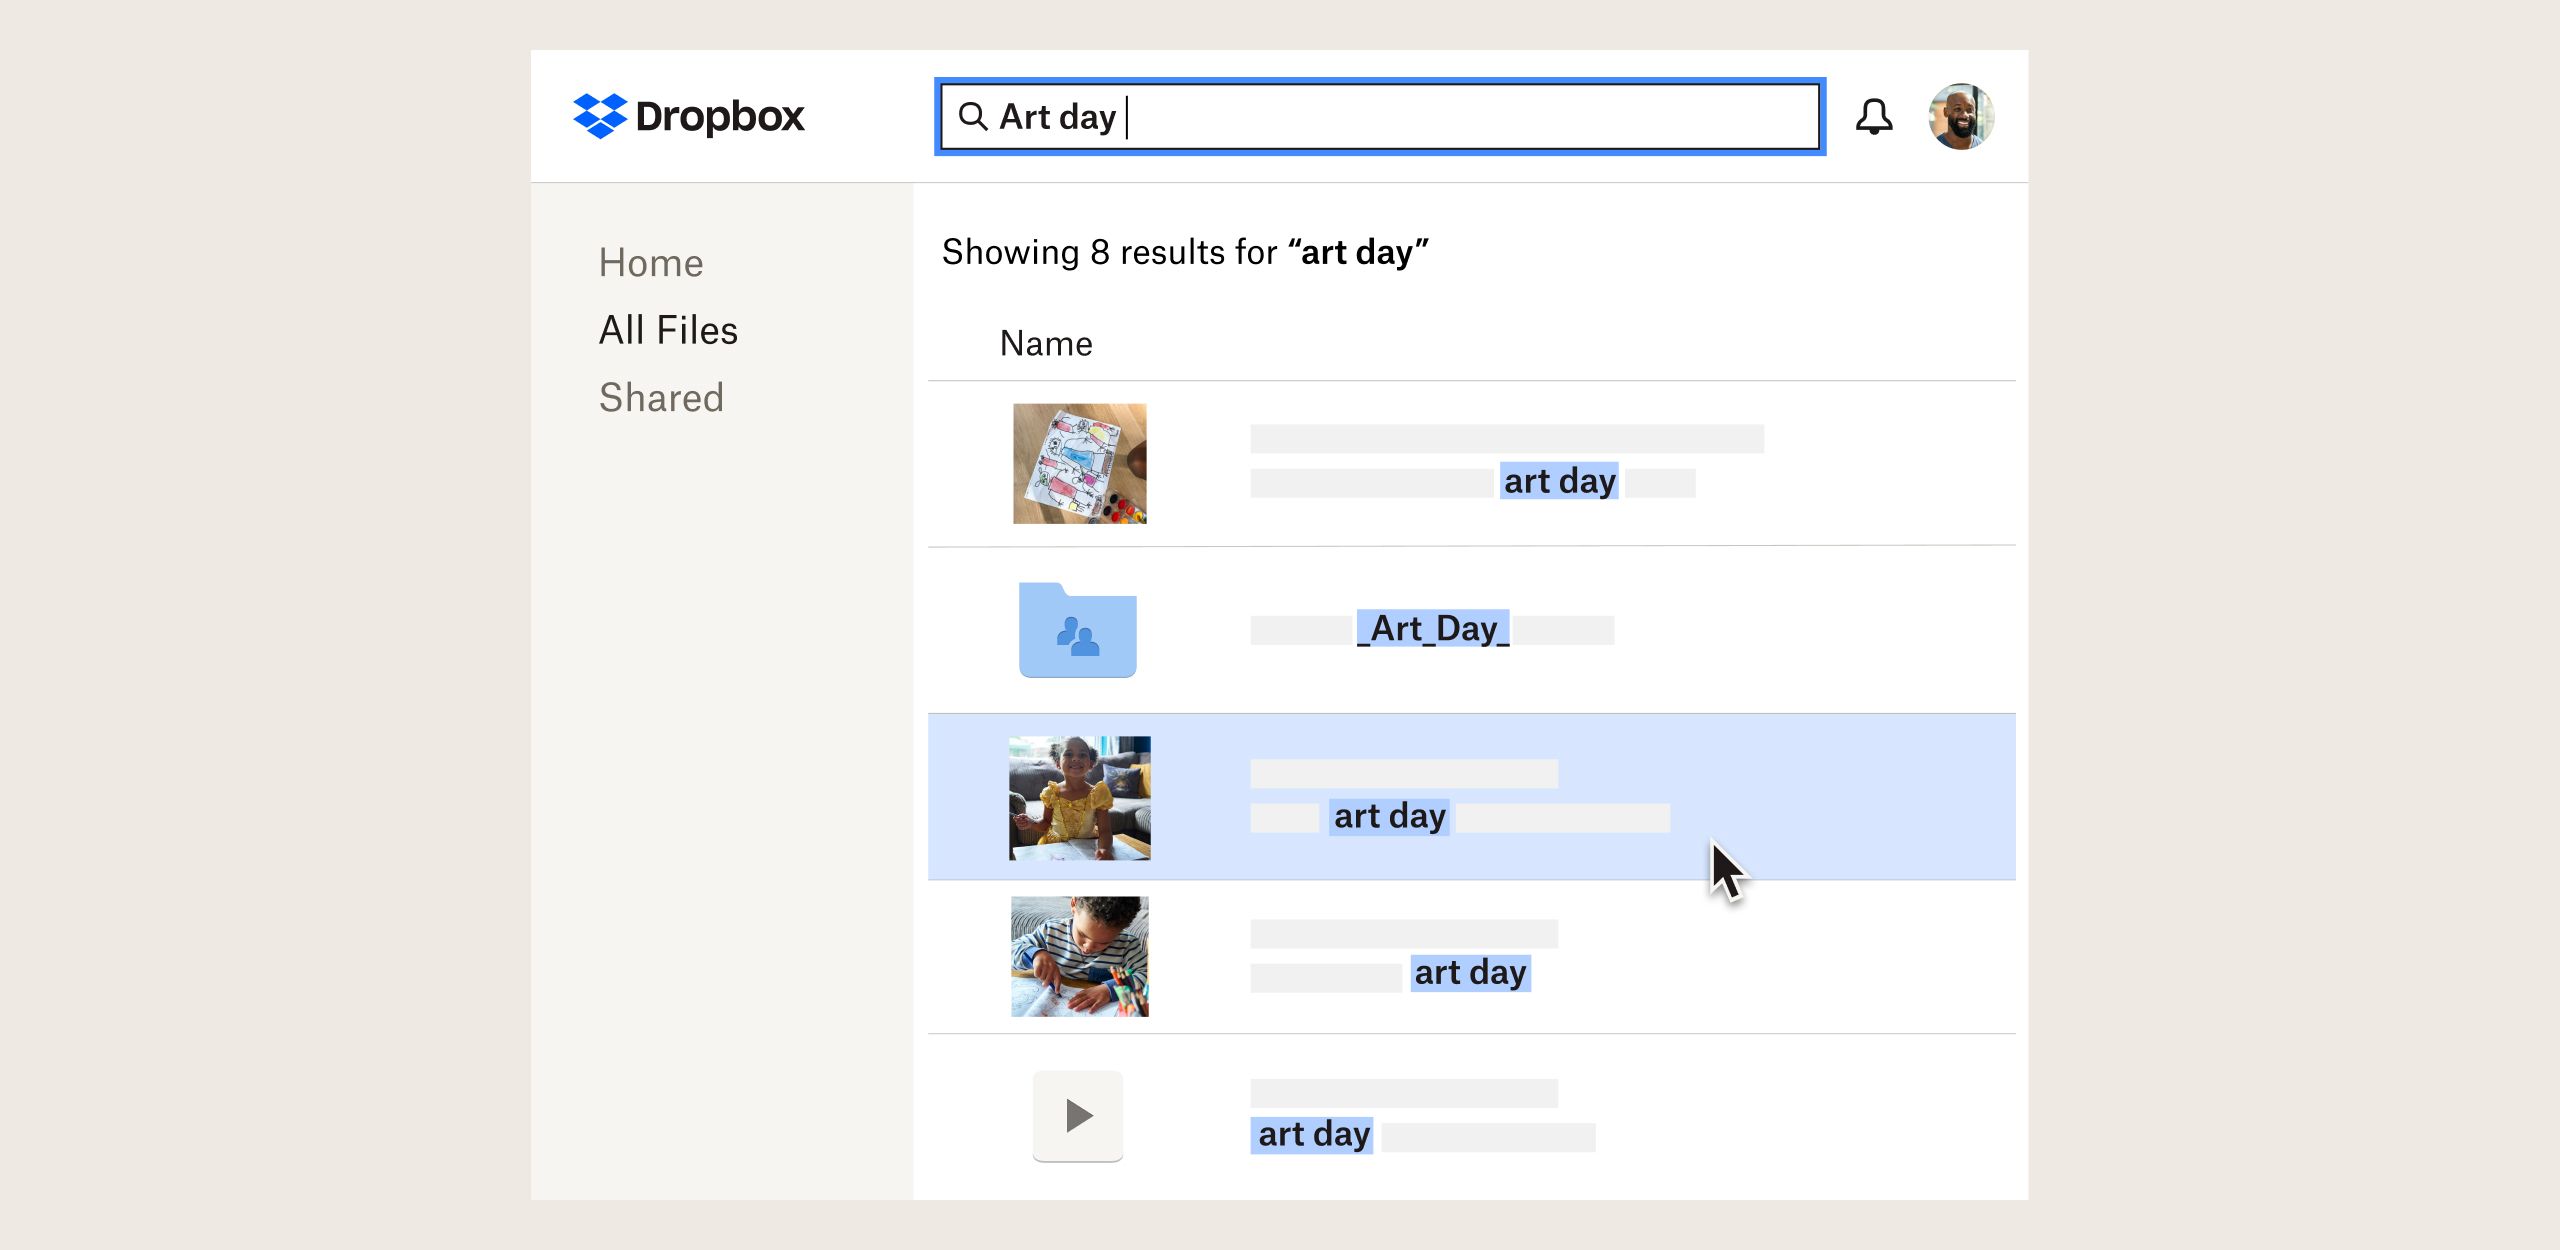 產品使用者介面顯示 Dropbox 資料夾的搜尋功能改善